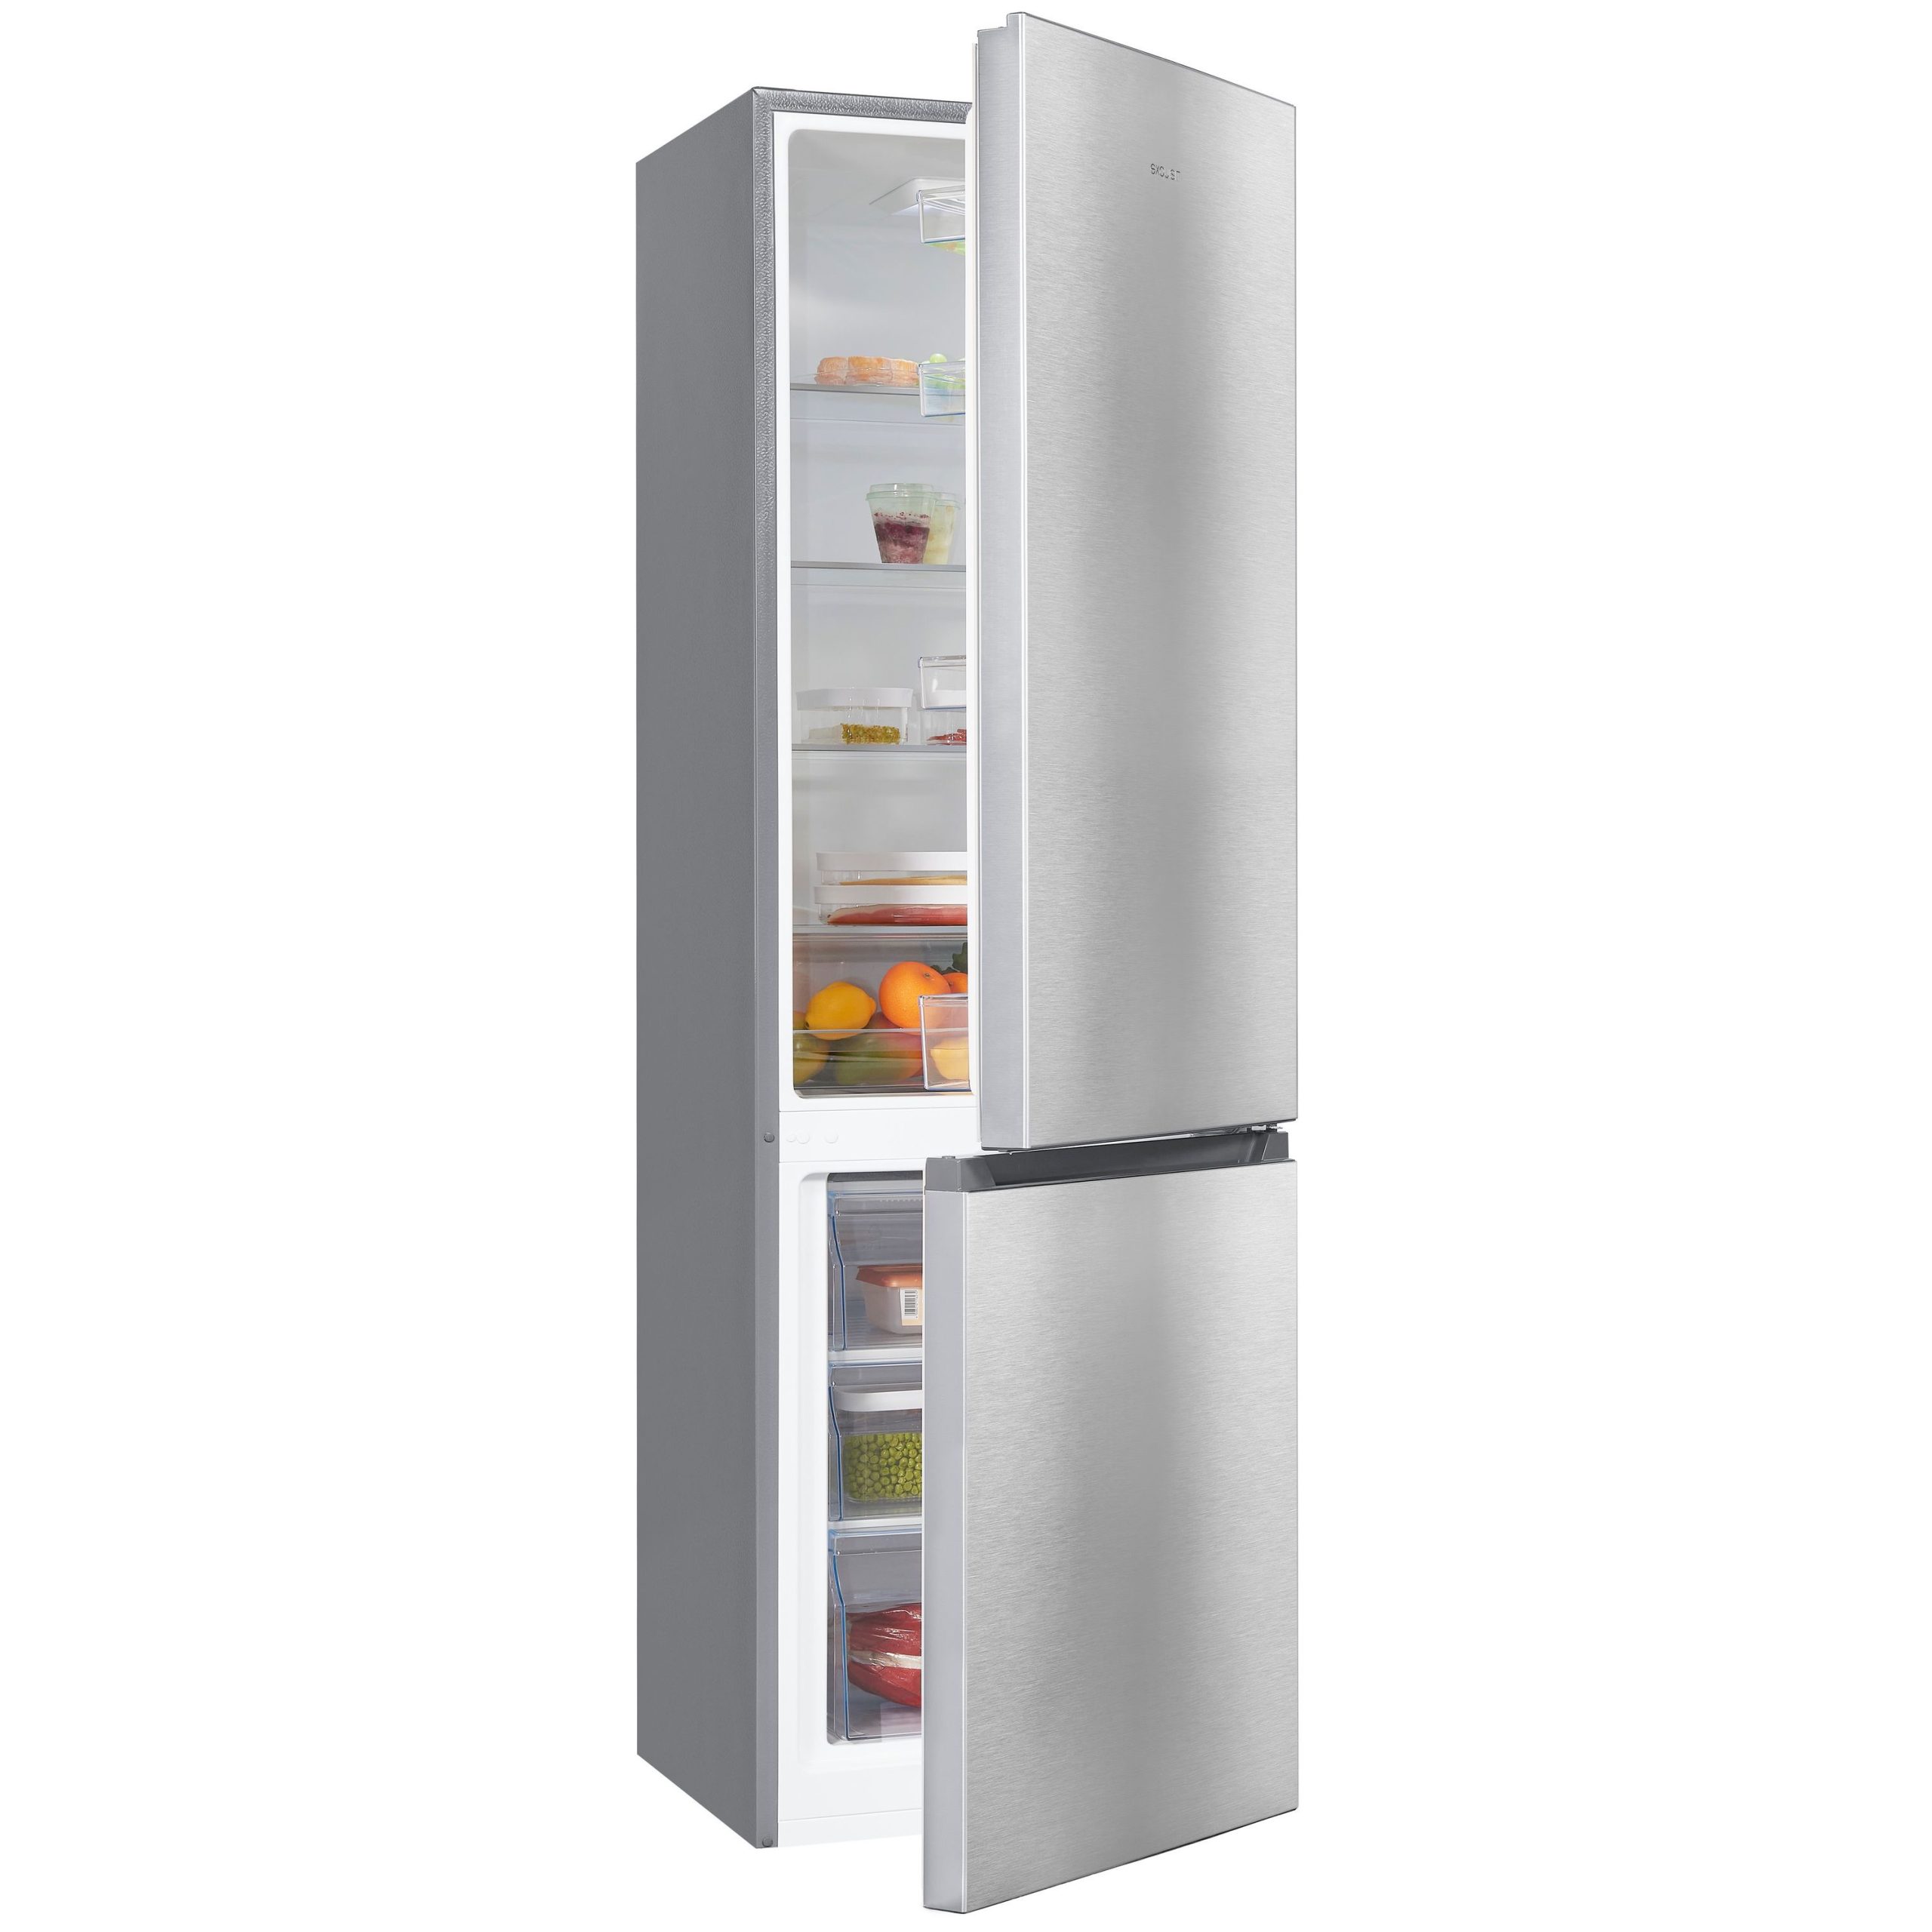 Venta online de frigoríficos Combi al mejor precio